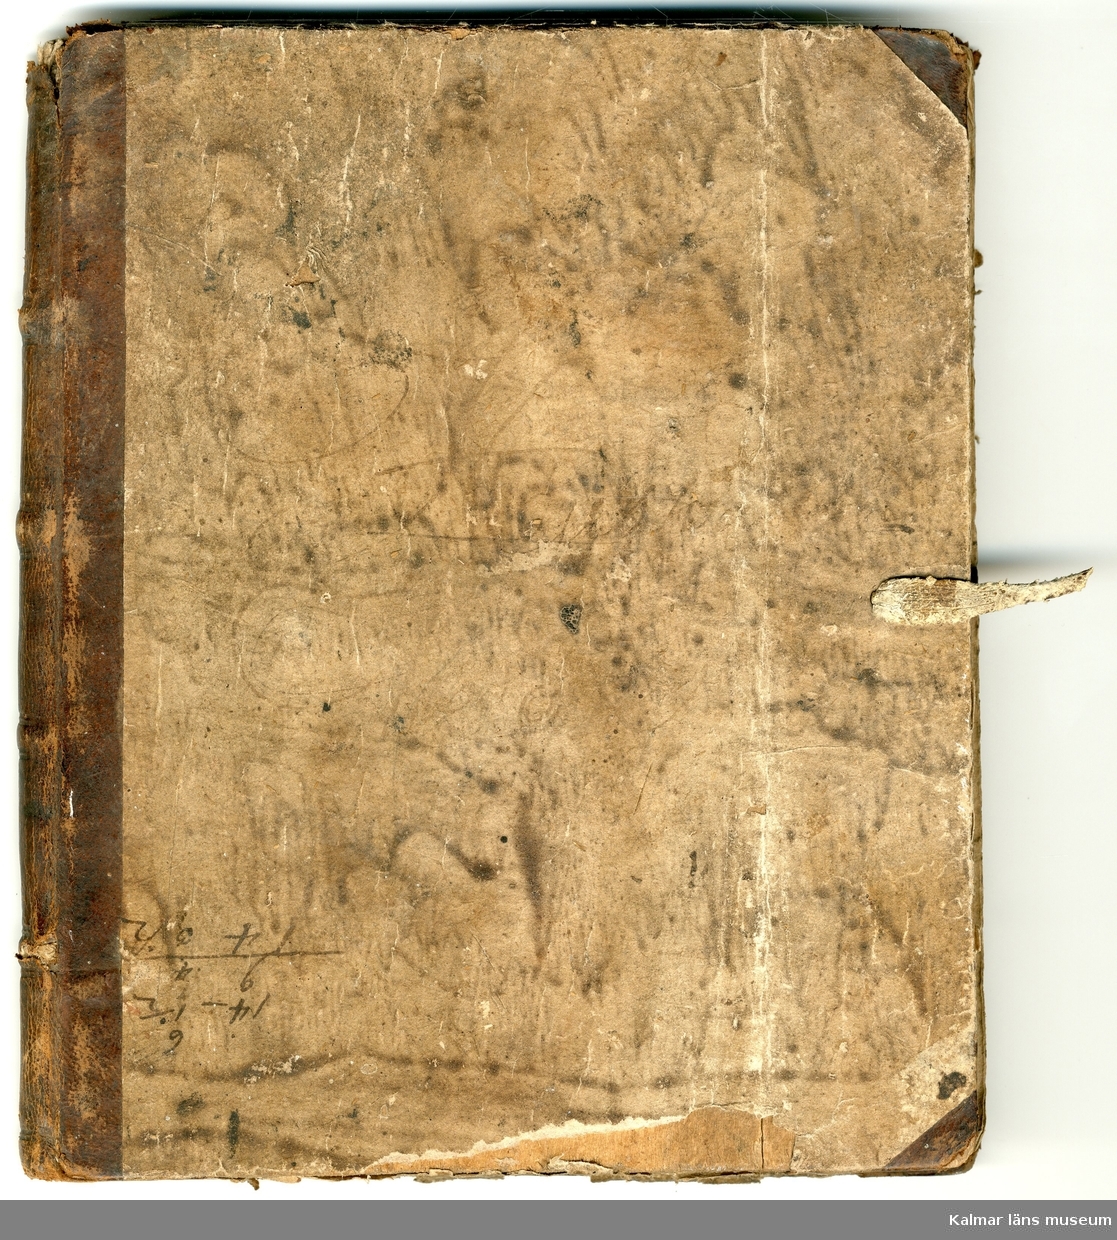 KLM22734 Räkenskapsbok, handskriven. Halvfranskt band. Träpärm med skinnrygg. Har tillhört Israel Ahlqvist, kyrkoherde i Resmo 1794-99. Boken innehåller bl a olika exempel på formulär och instruktionen för olika ärenden som hyrkoherden har att hantera. För lysningar, Allhelgonahjälp och kollekt. Årtal från 1794 till 1822 förekommer, varför man kan anta att den använts även efter Israel Ahlqvists tid.